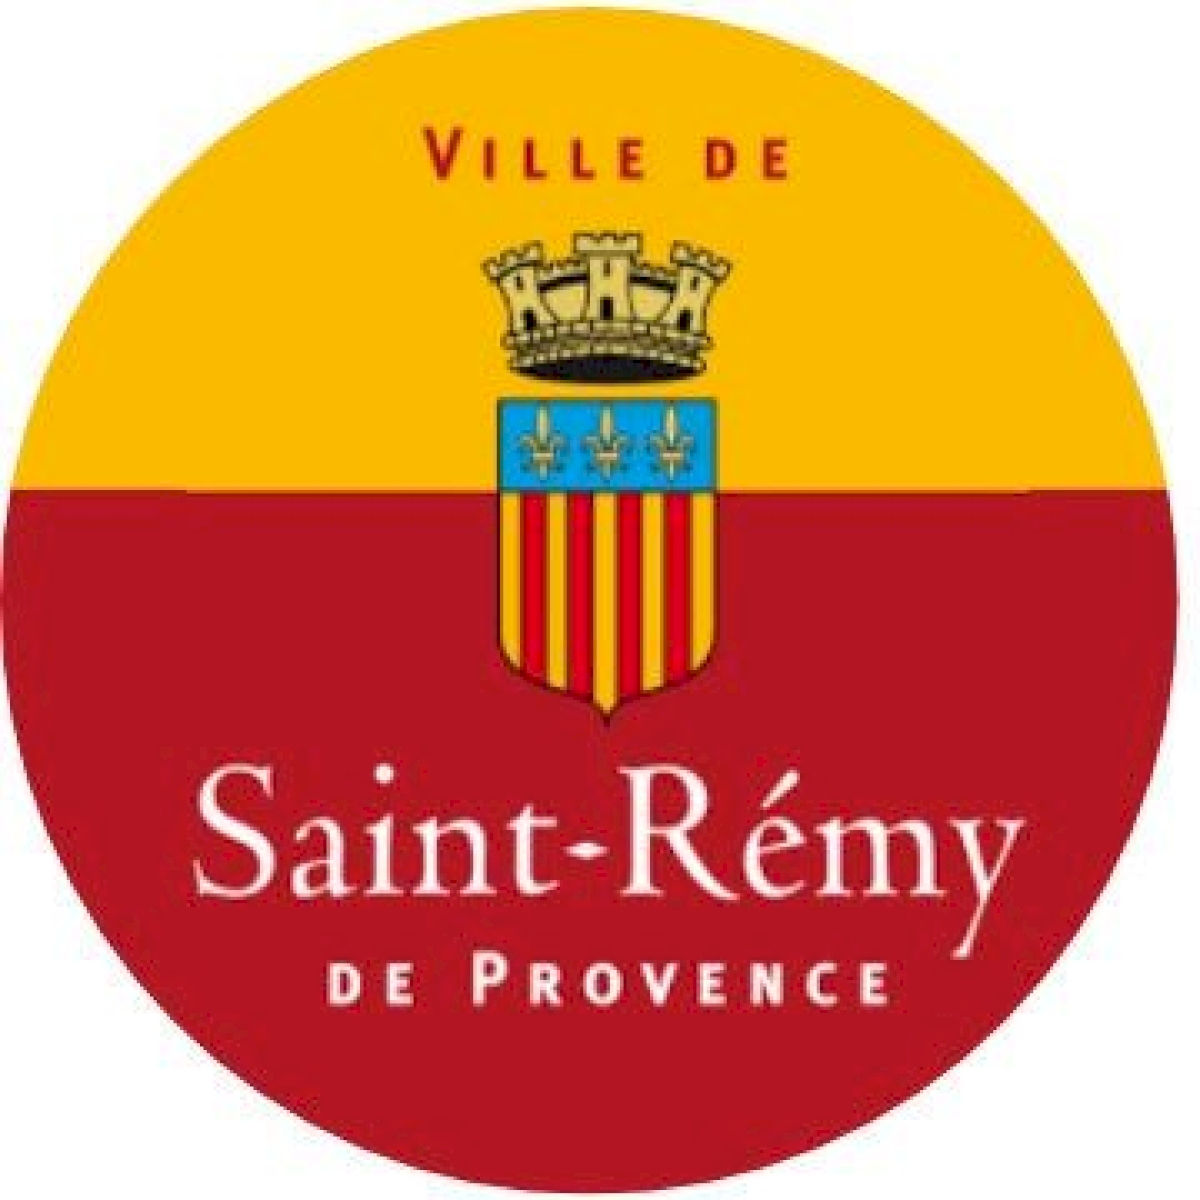 Ville de Saint-Rémy de Provence